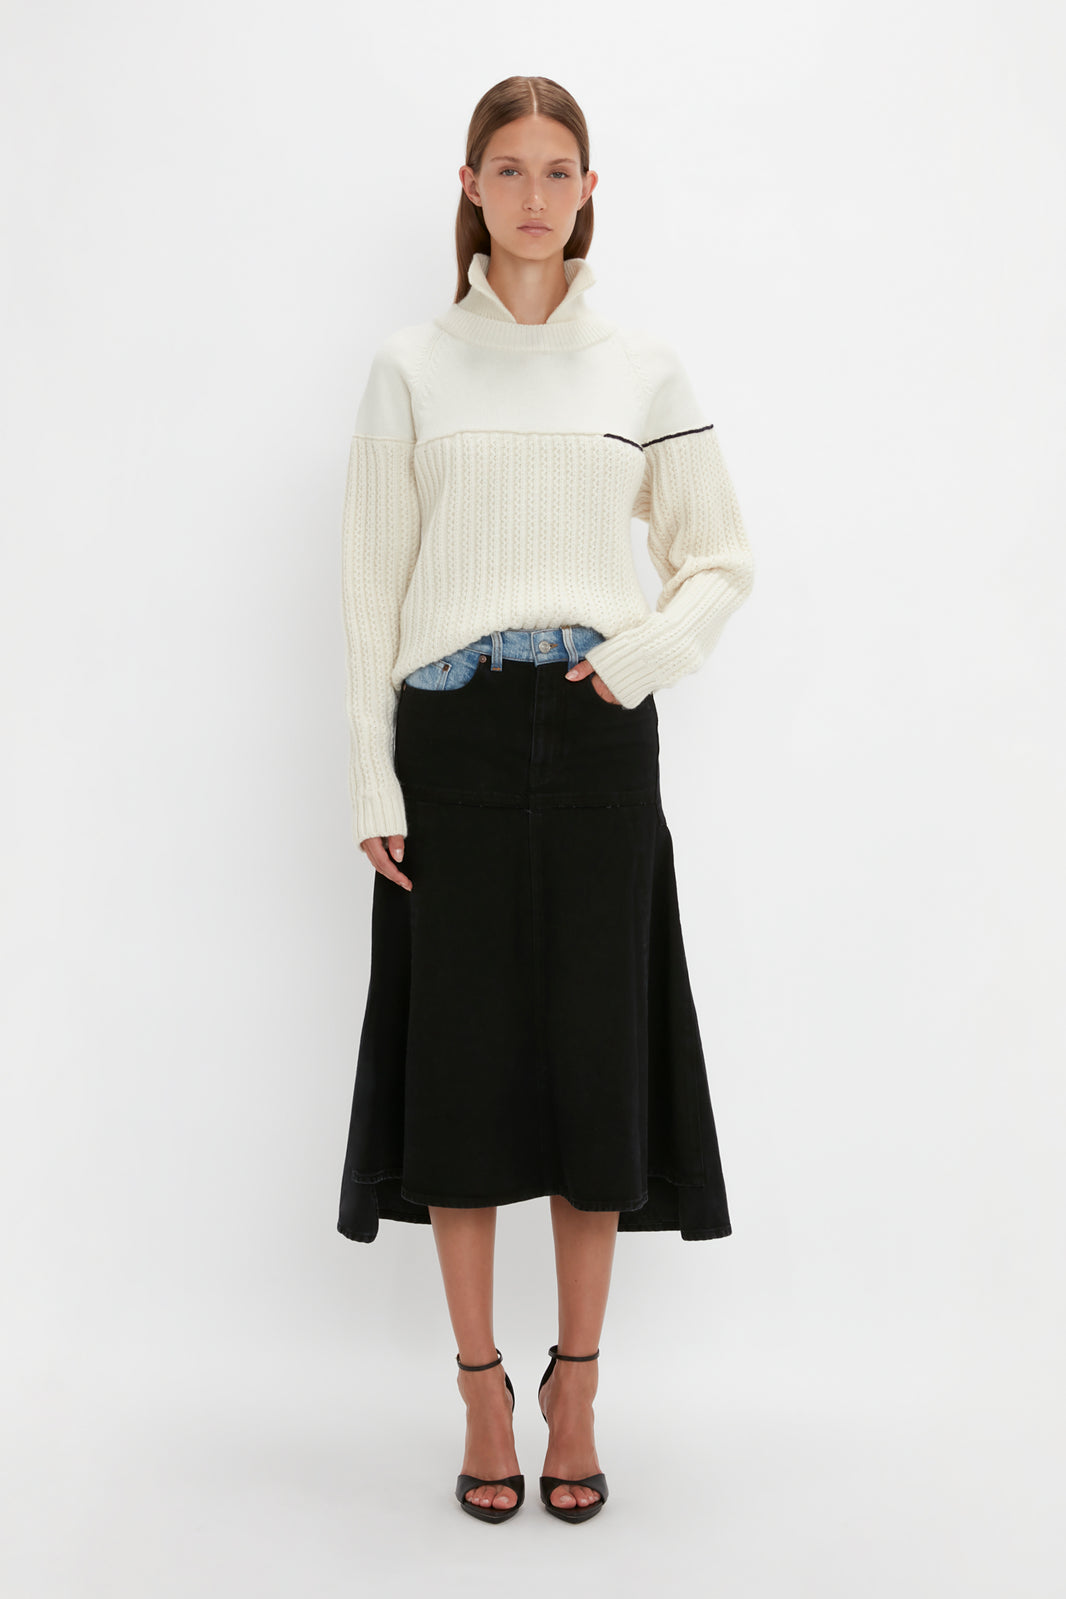 Luxury Designer Knitwear & Cashmere Jumpers – Victoria Beckham UK